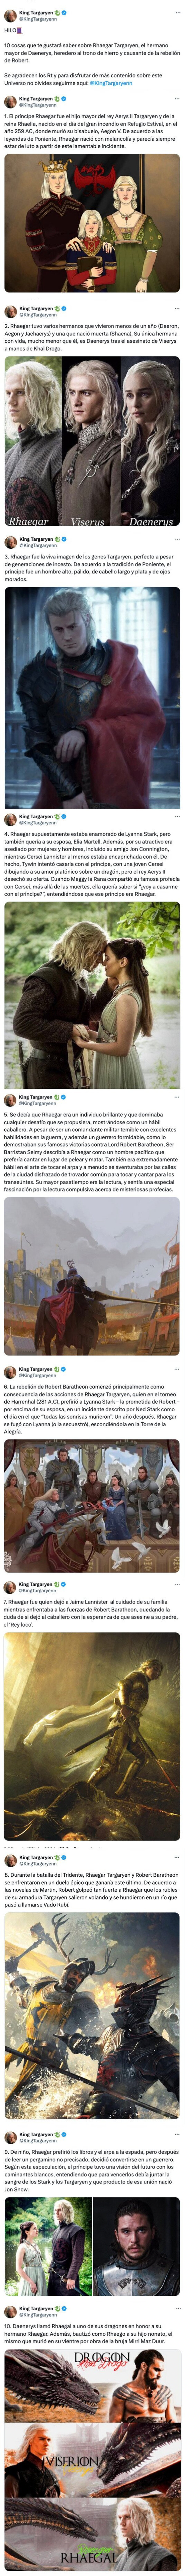 GALERÍA: 10 cosas que te gustará saber sobre Rhaegar Targaryen, el hermano mayor de Daenerys